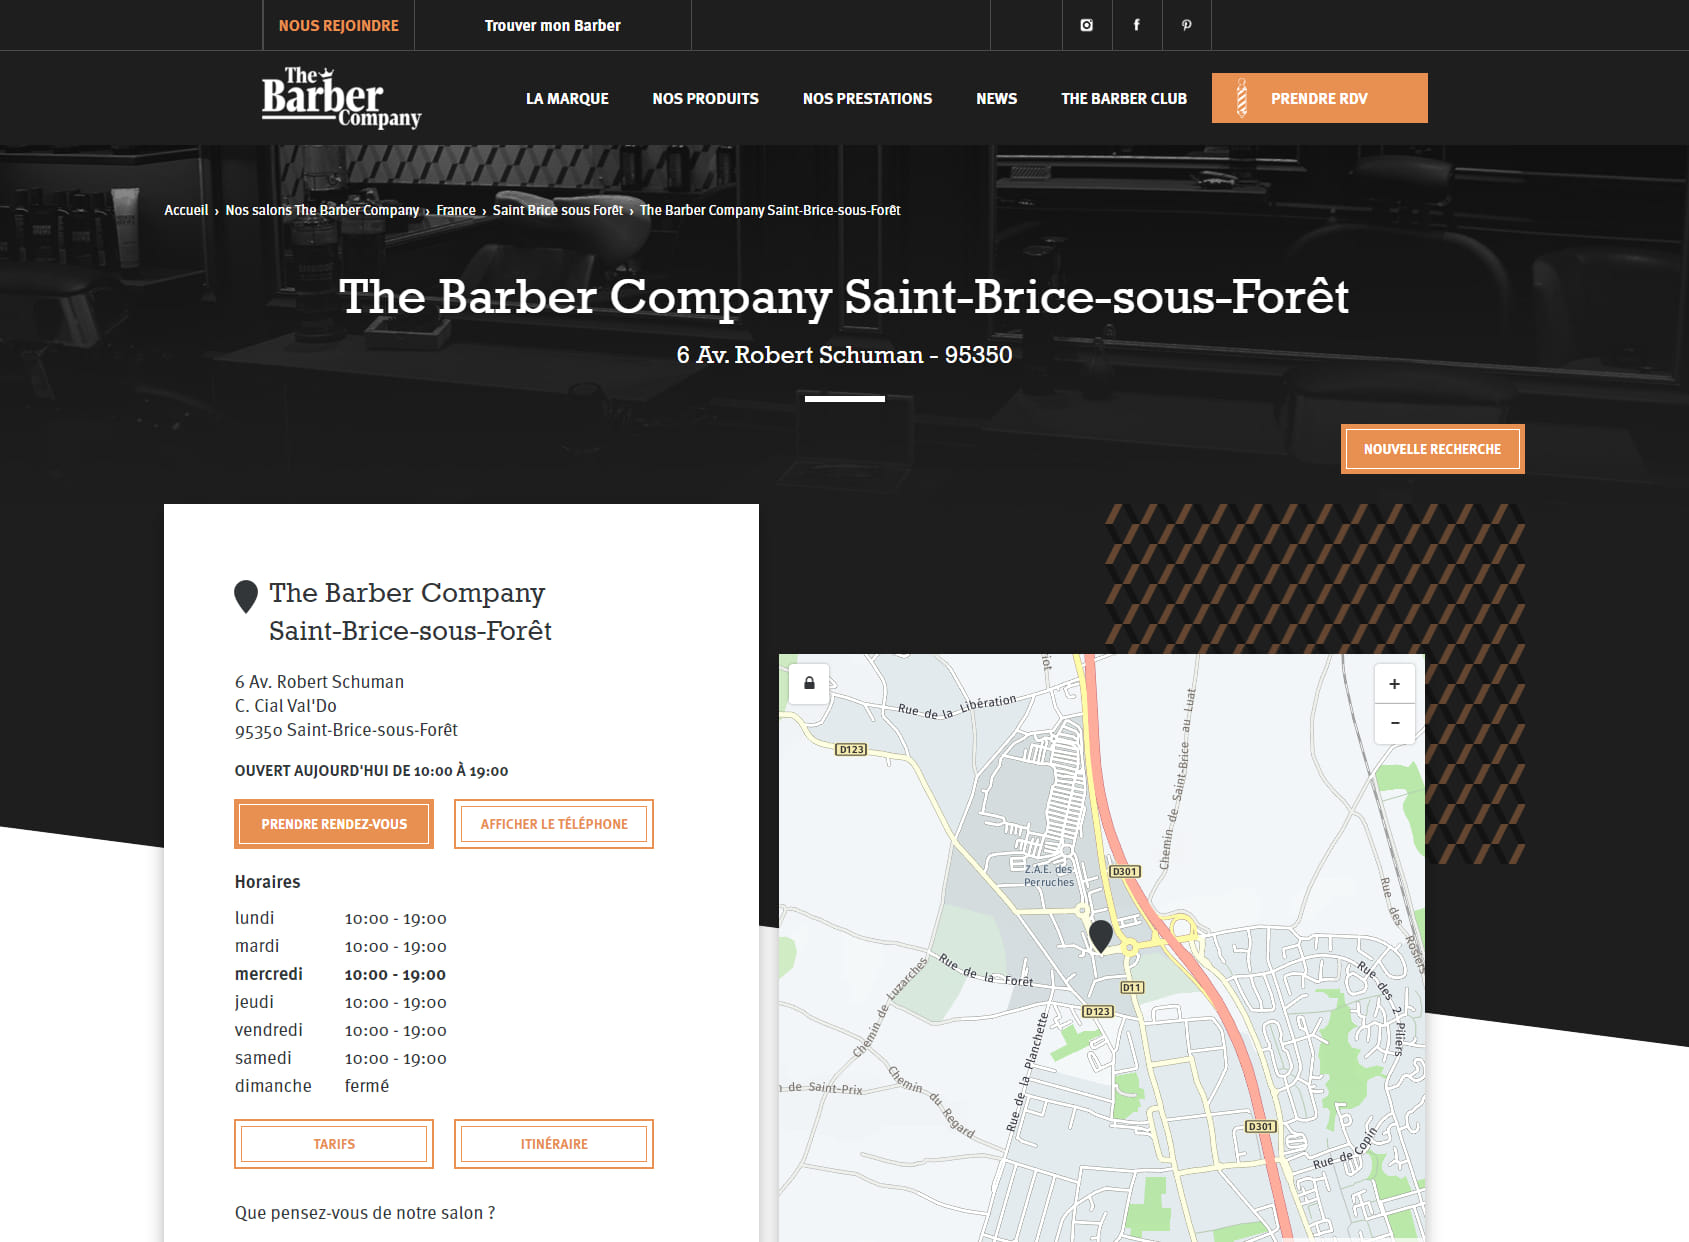 The Barber Company - Coiffeur Barbier Saint-Brice-sous-Forêt